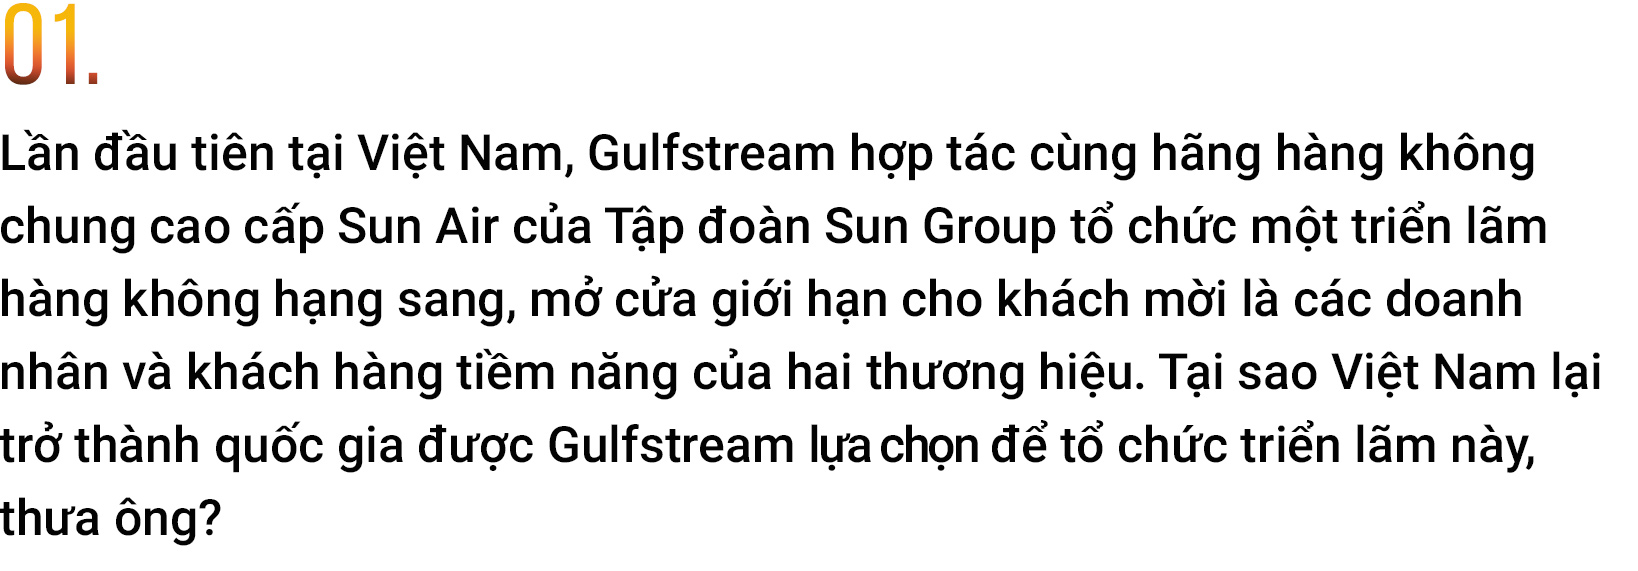 Đại diện Gulfstream: “Cơ hội cho ngành hàng không cao cấp đang thực sự rộng mở tại Việt Nam” - Ảnh 2.